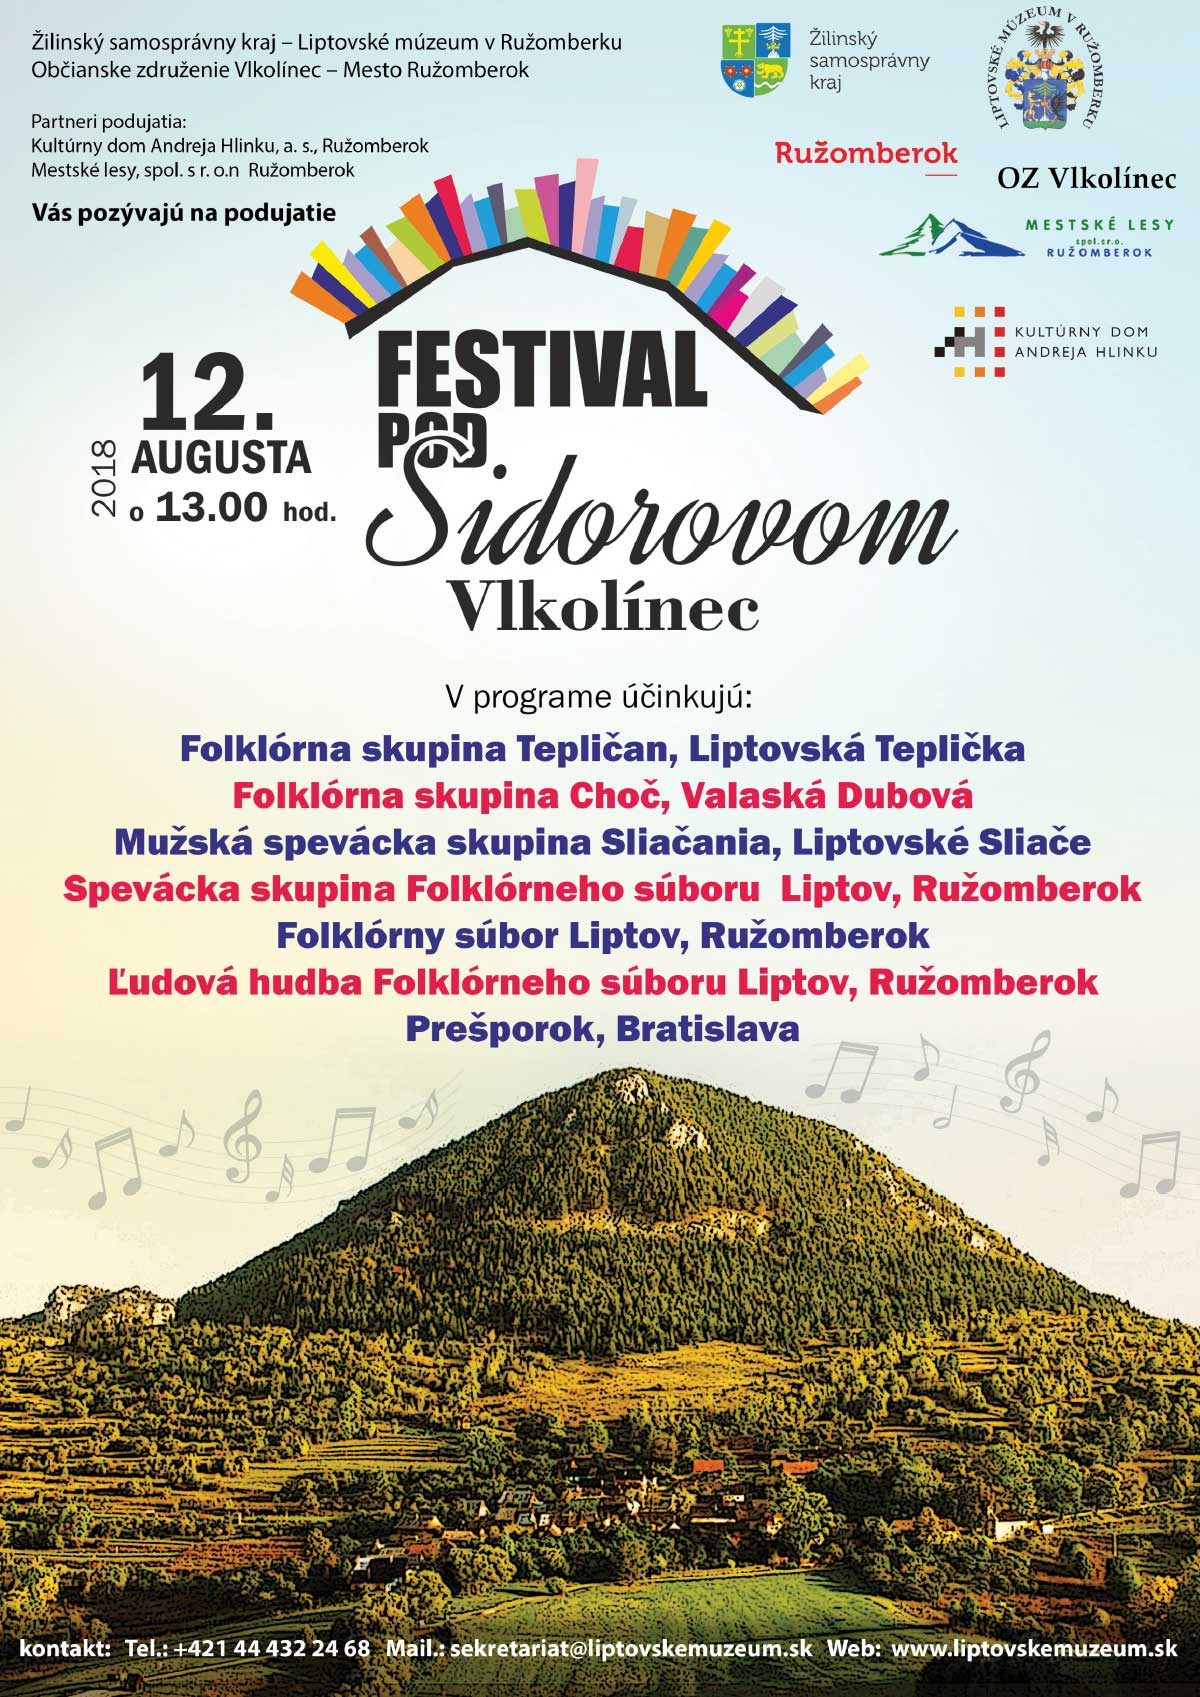 Festival pod Sidorovom 2018 Vlkolnec - 5. ronk